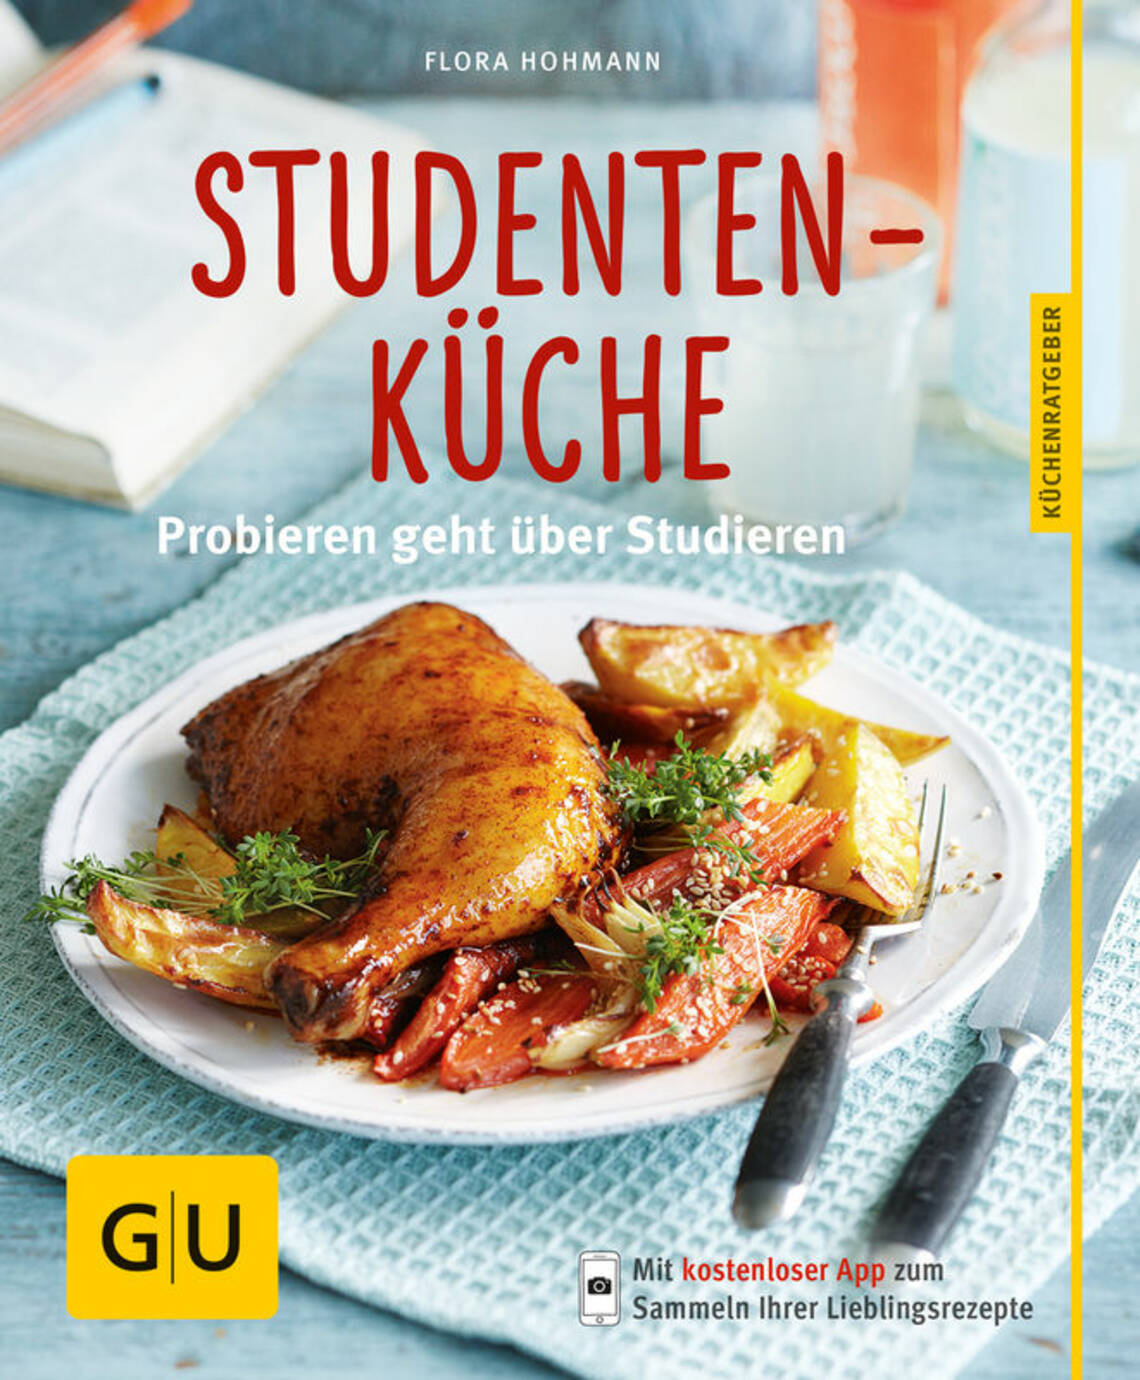 Studentenküche von Flora Hohmann